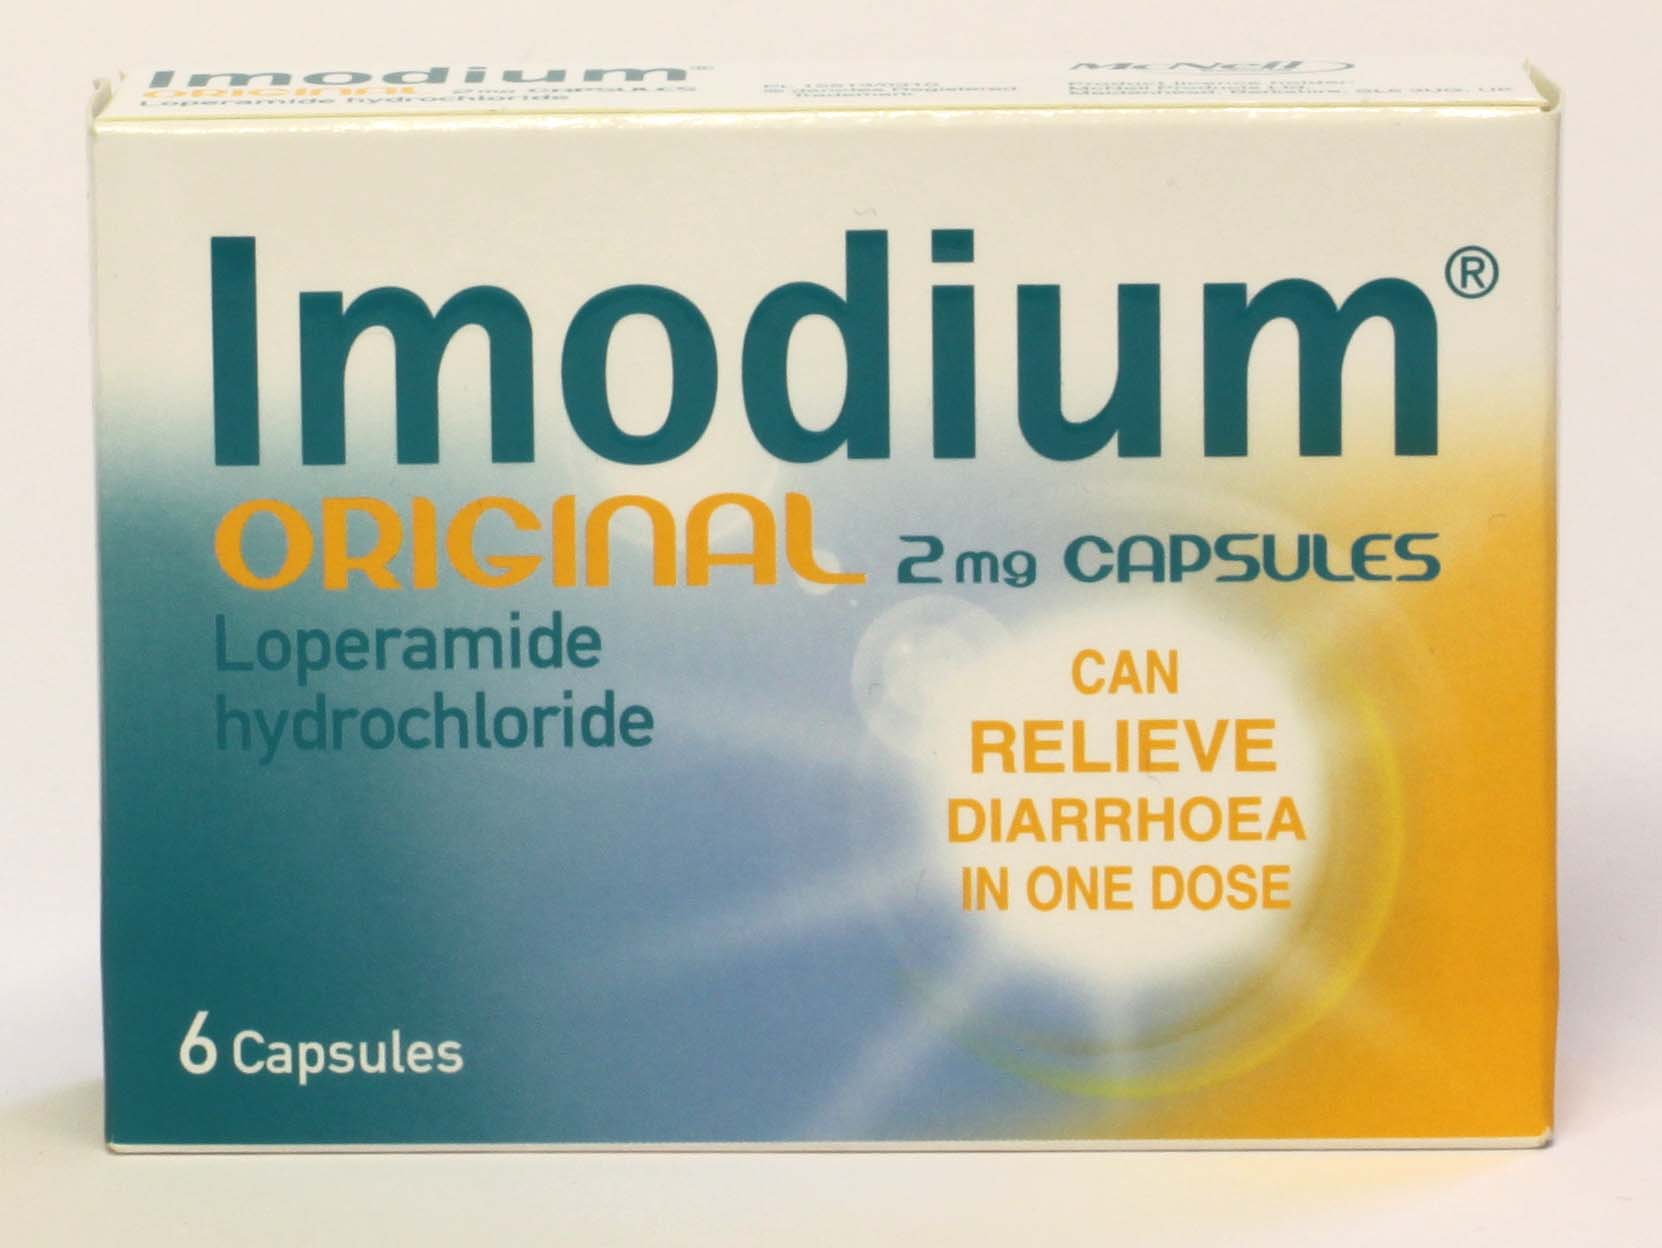 Imodium Original 2mg - 6 capsules